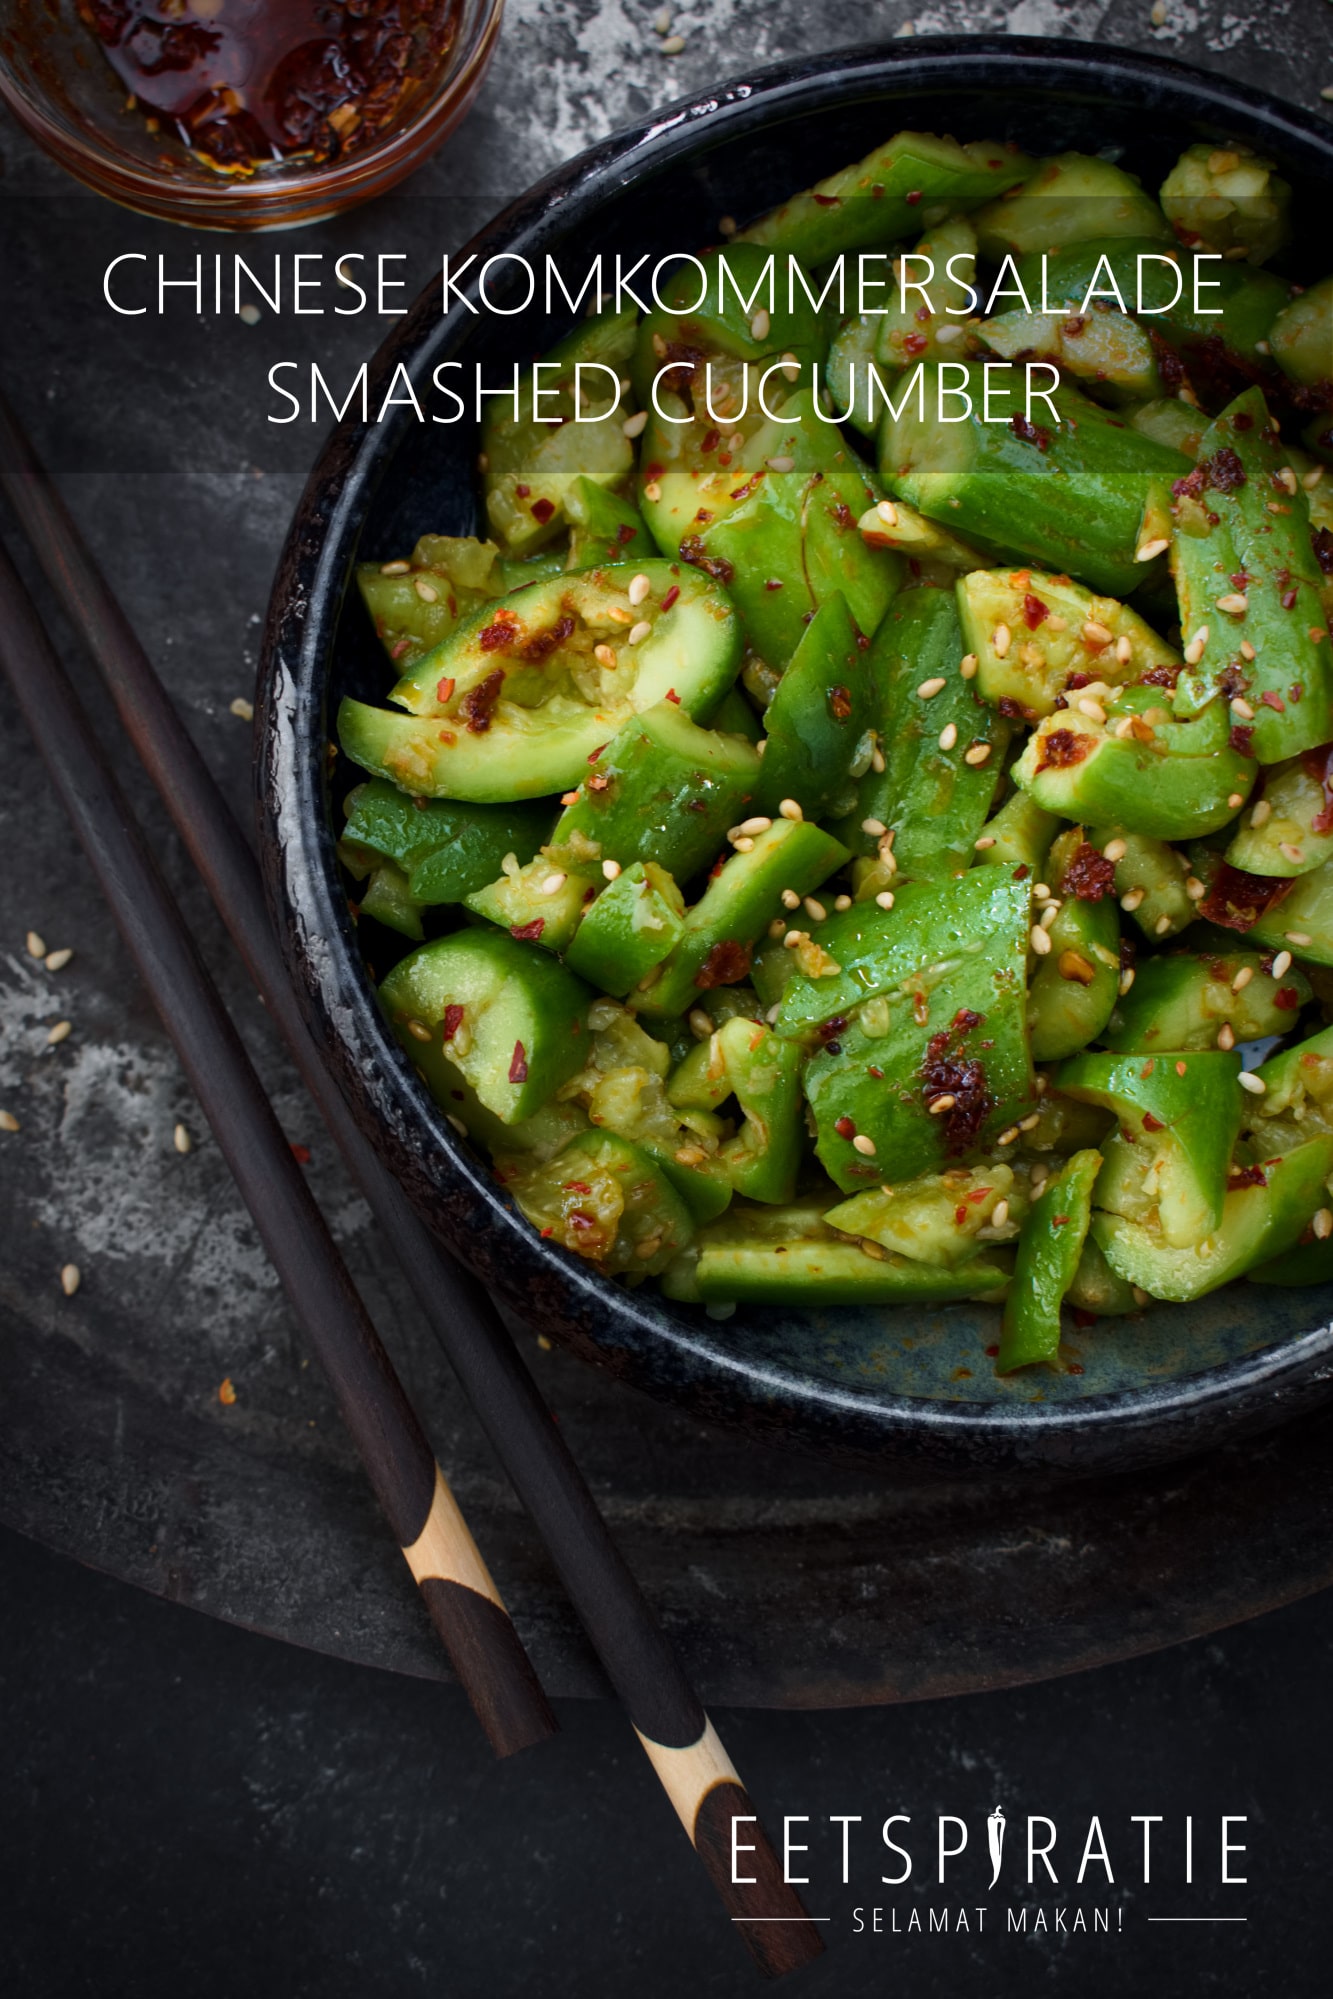 Chinese komkommersalade